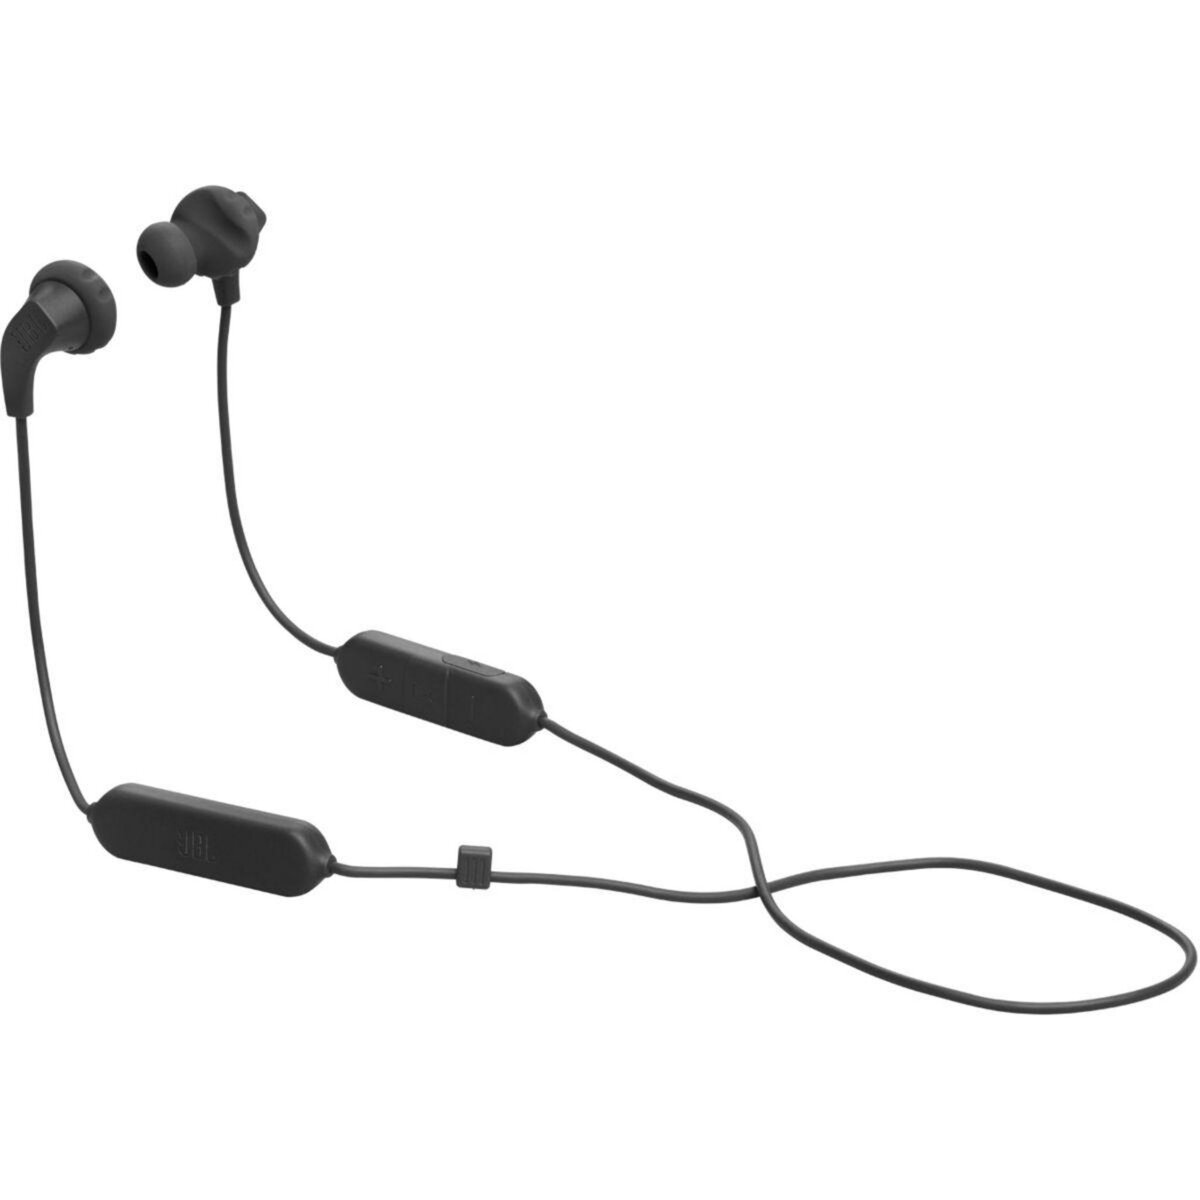 Ecouteurs filaires - JBL TUNE 110 - Écouteurs intra-auriculaires - 06 mois